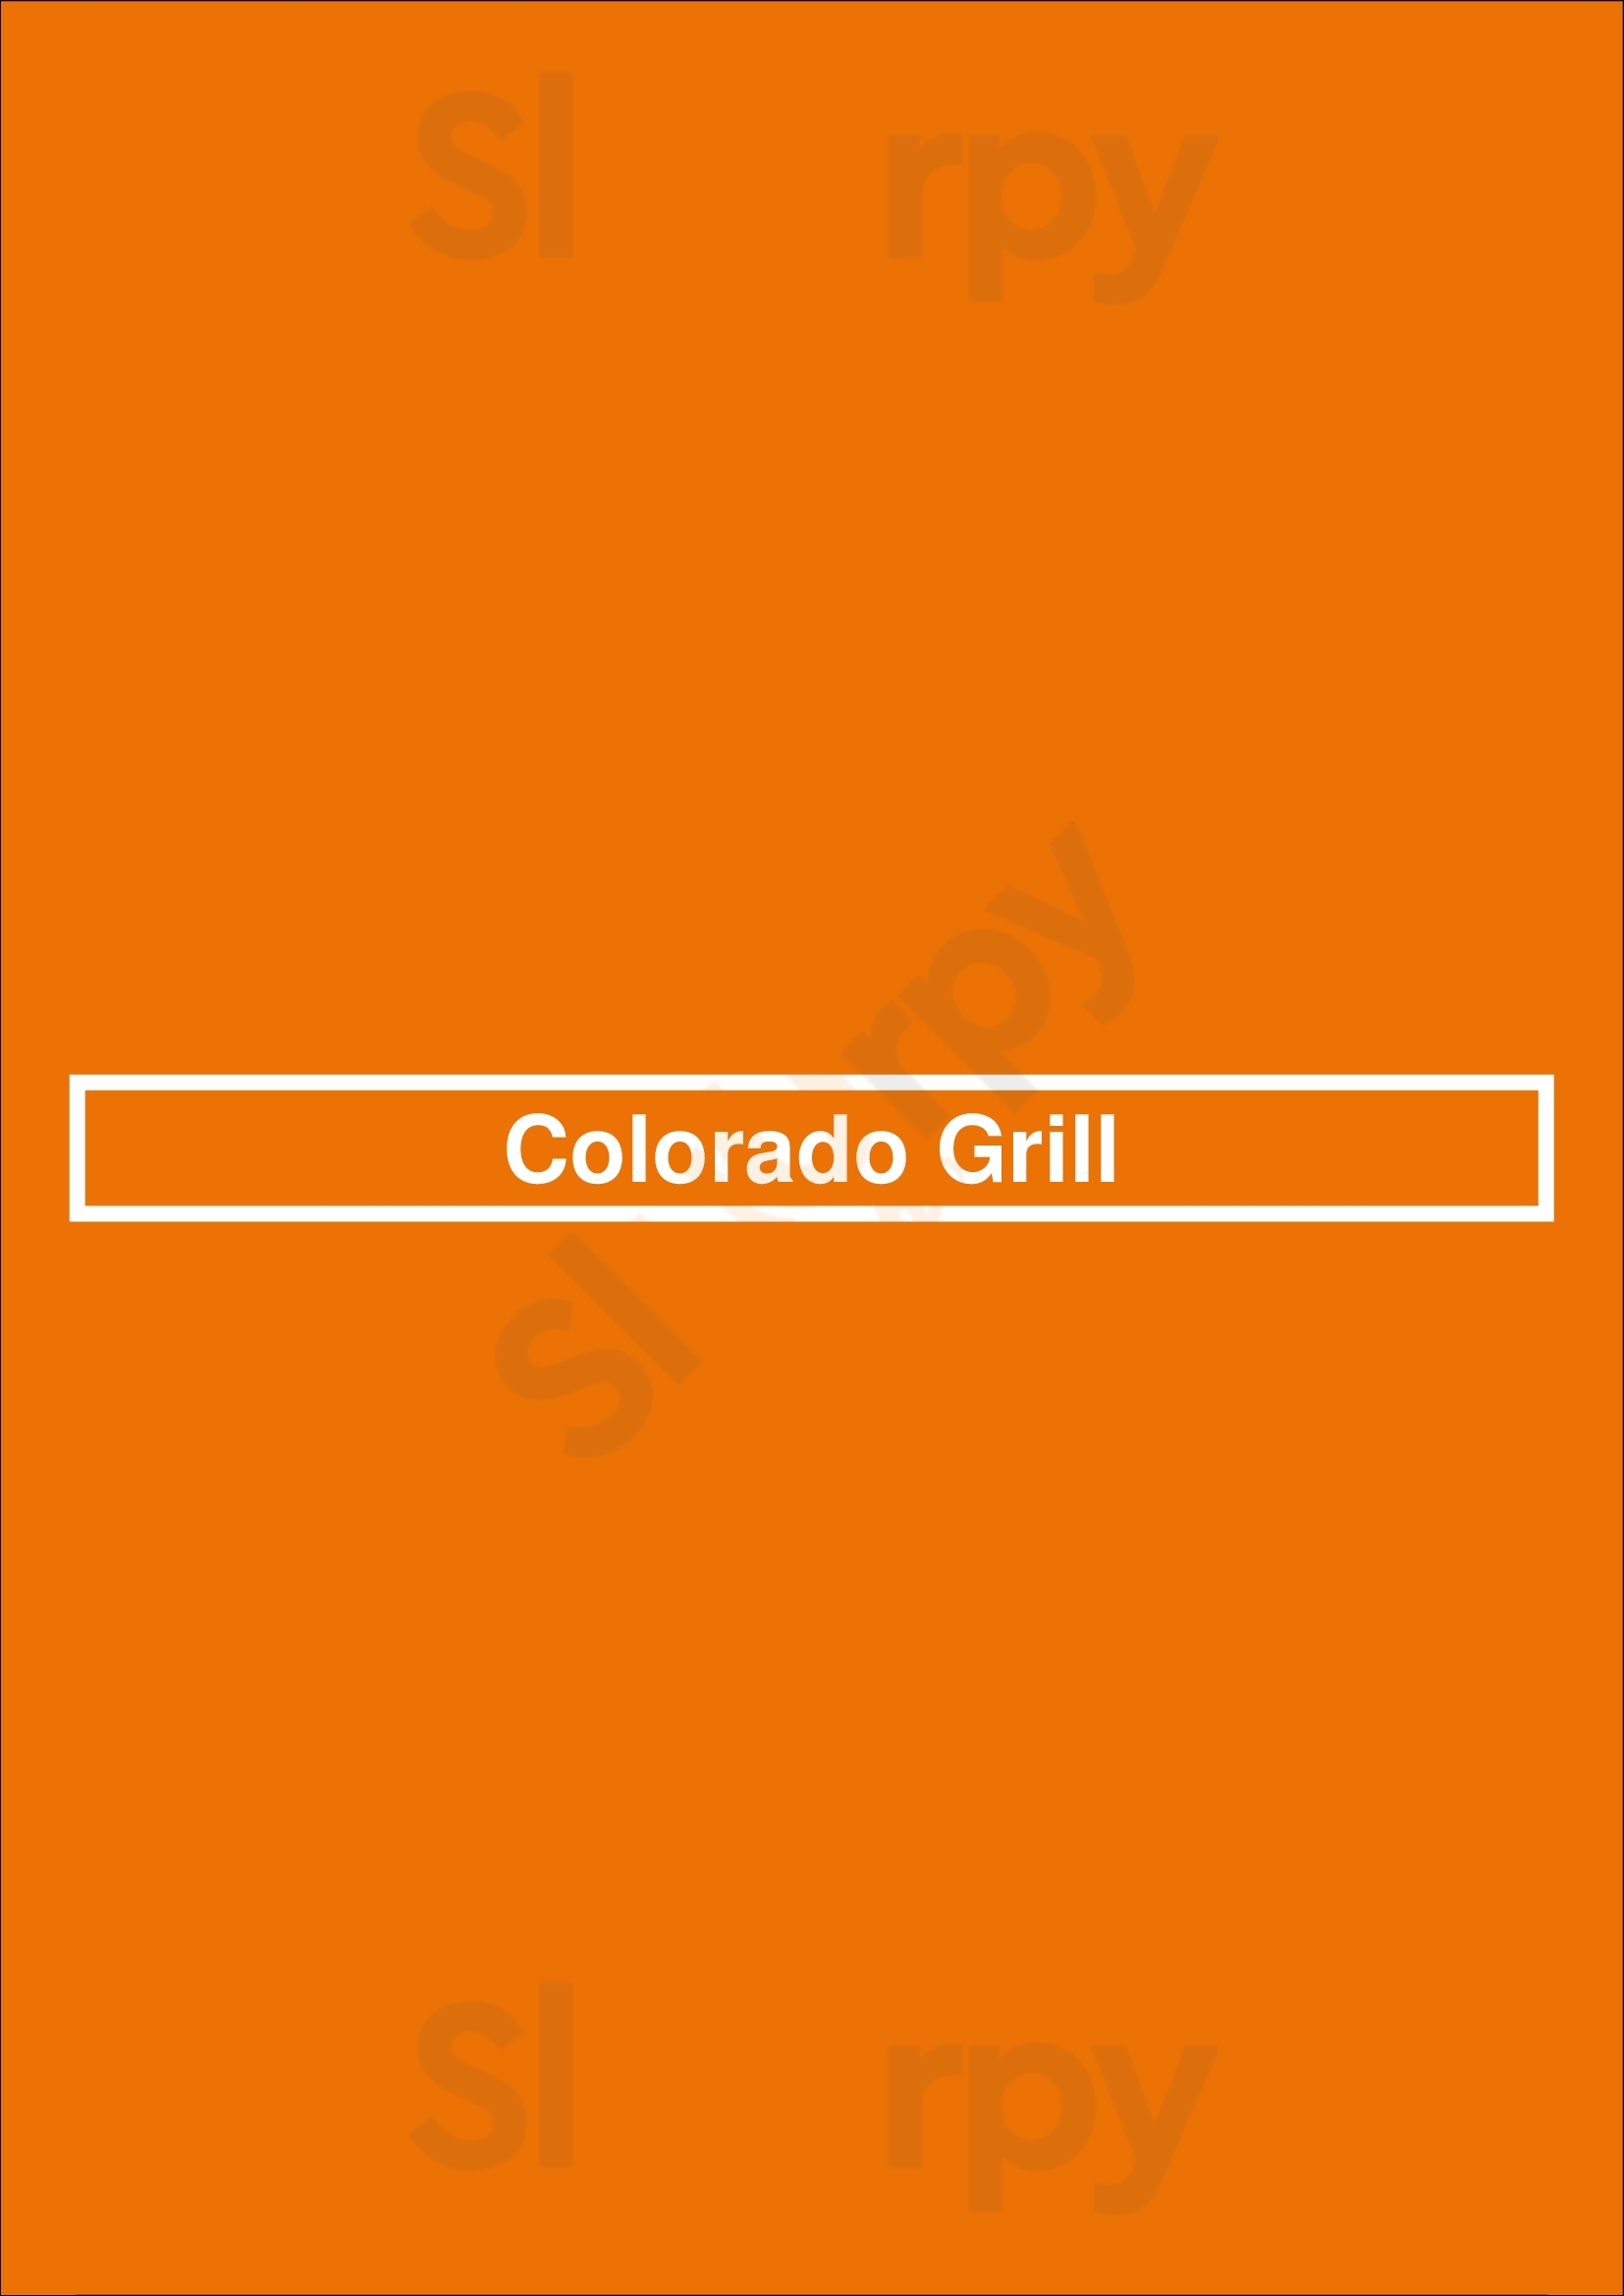 Colorado Grill Fresno Menu - 1